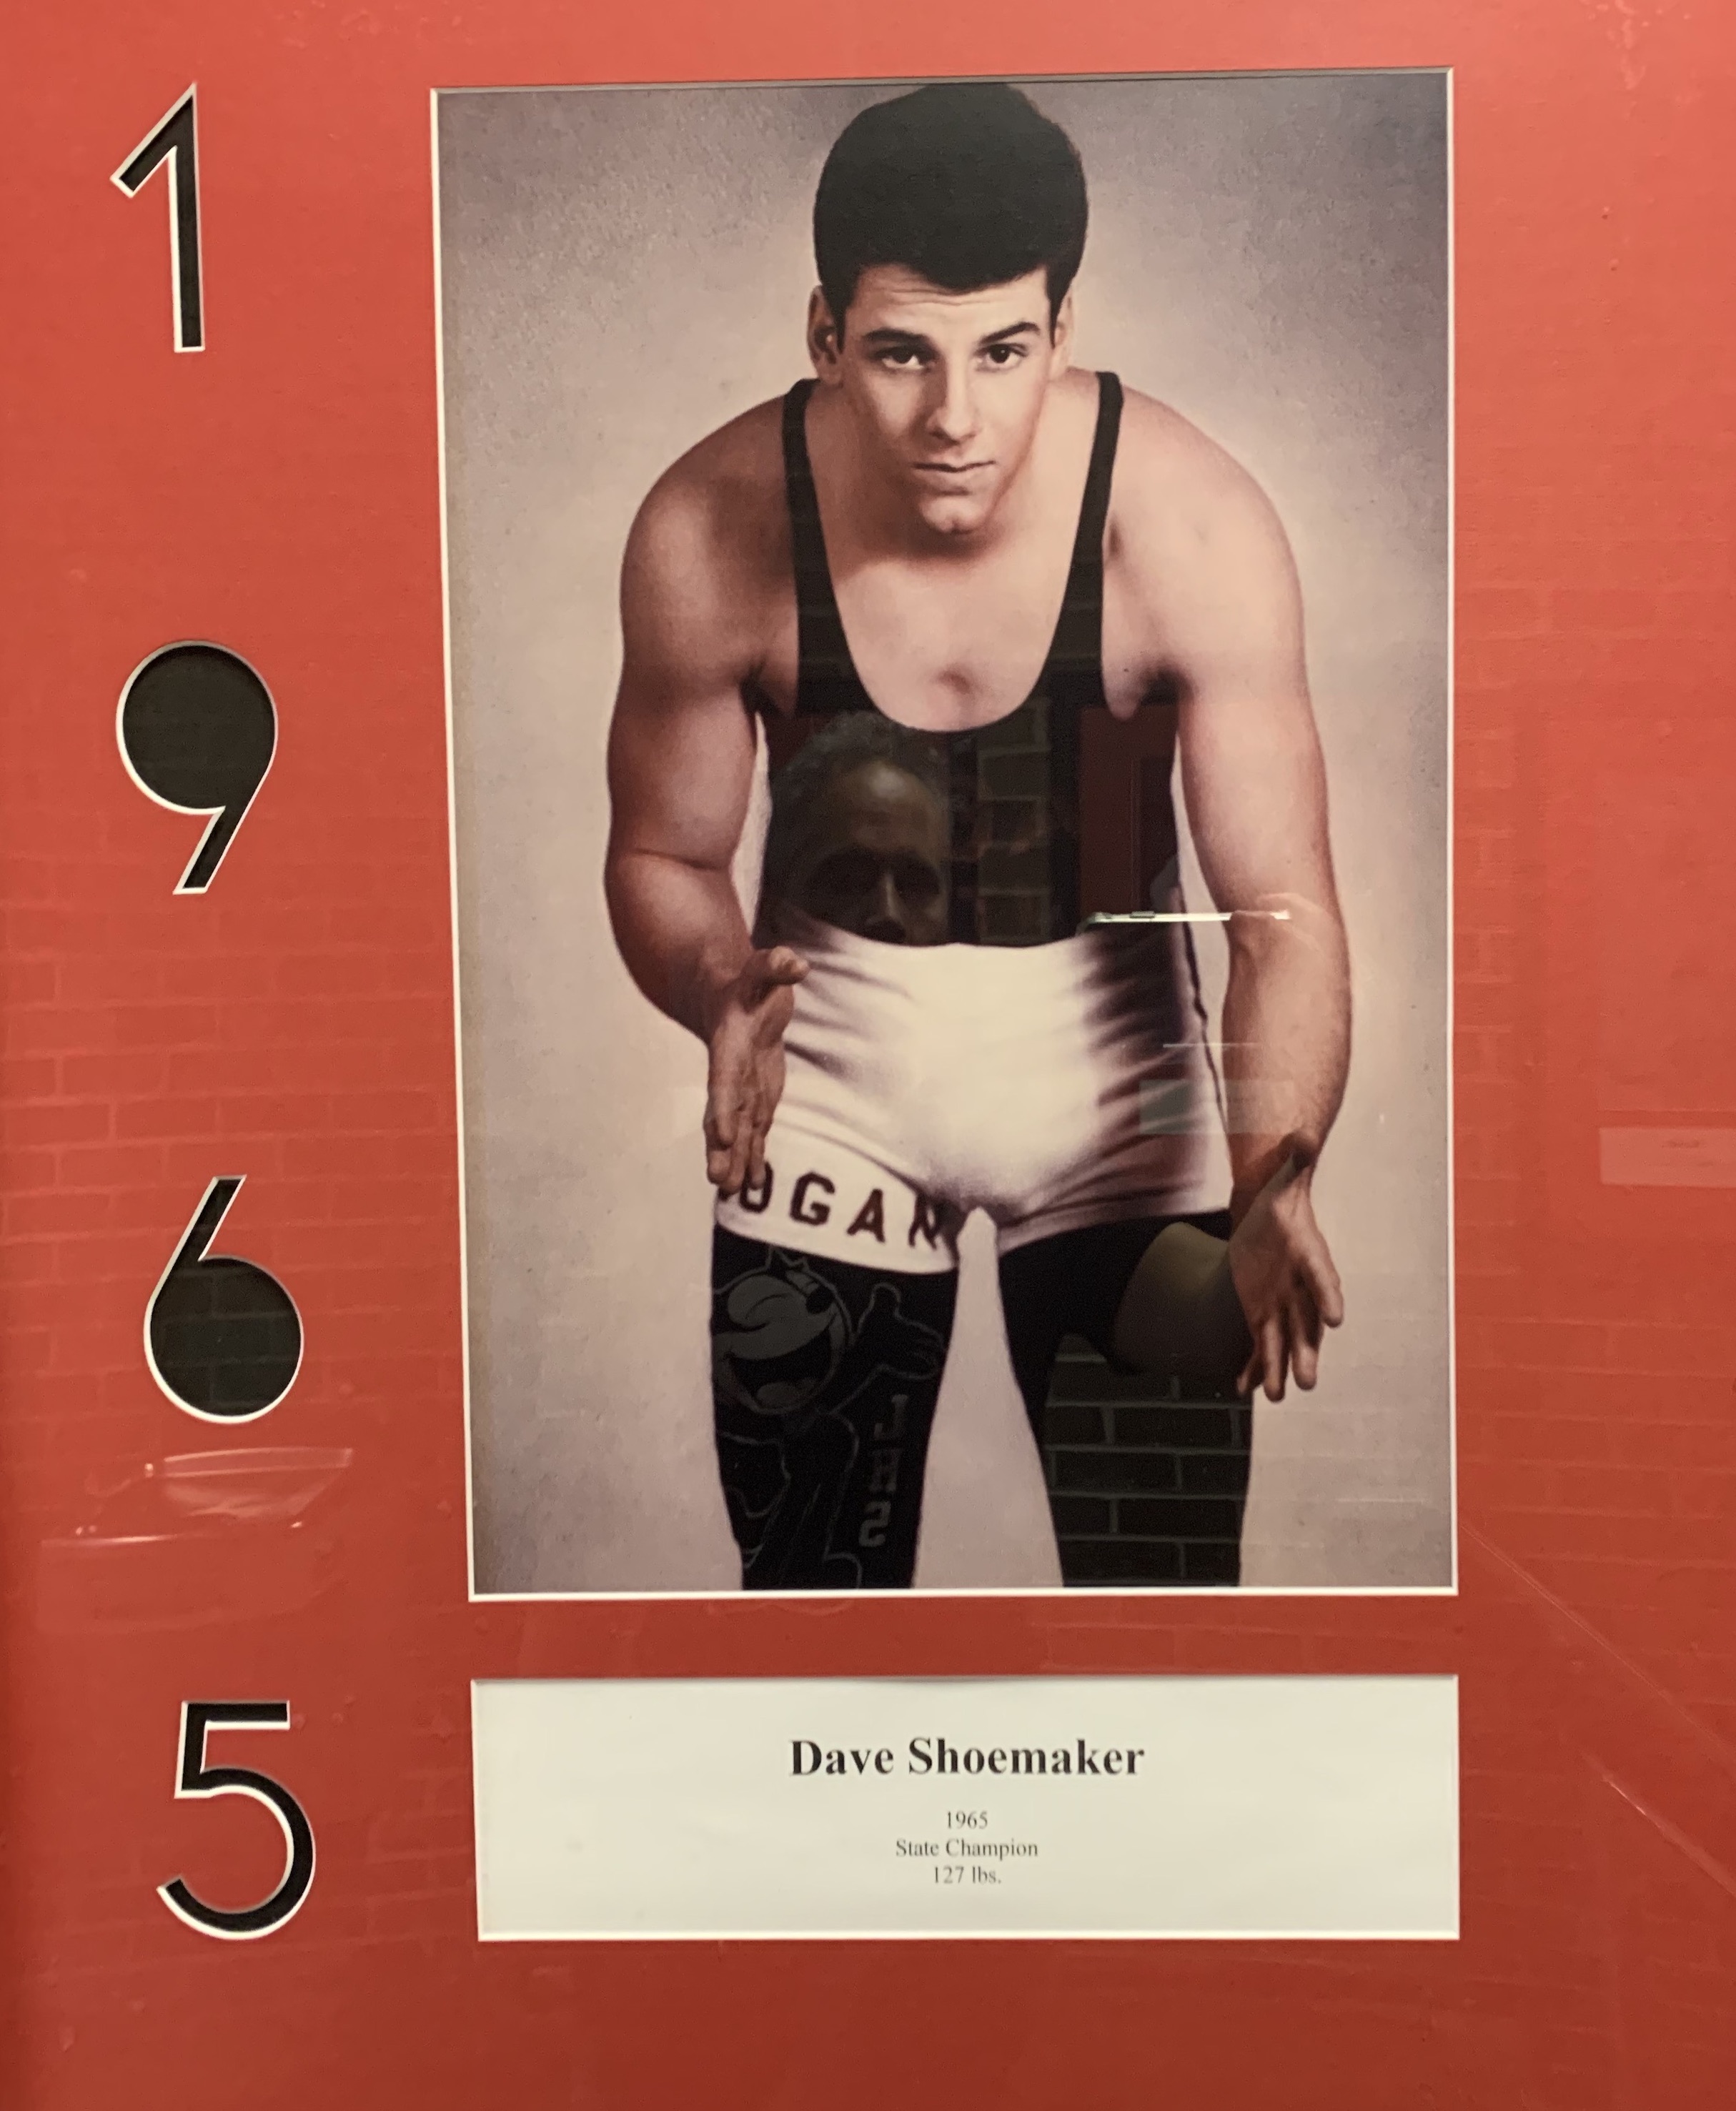 1965 Dave Shoemaker